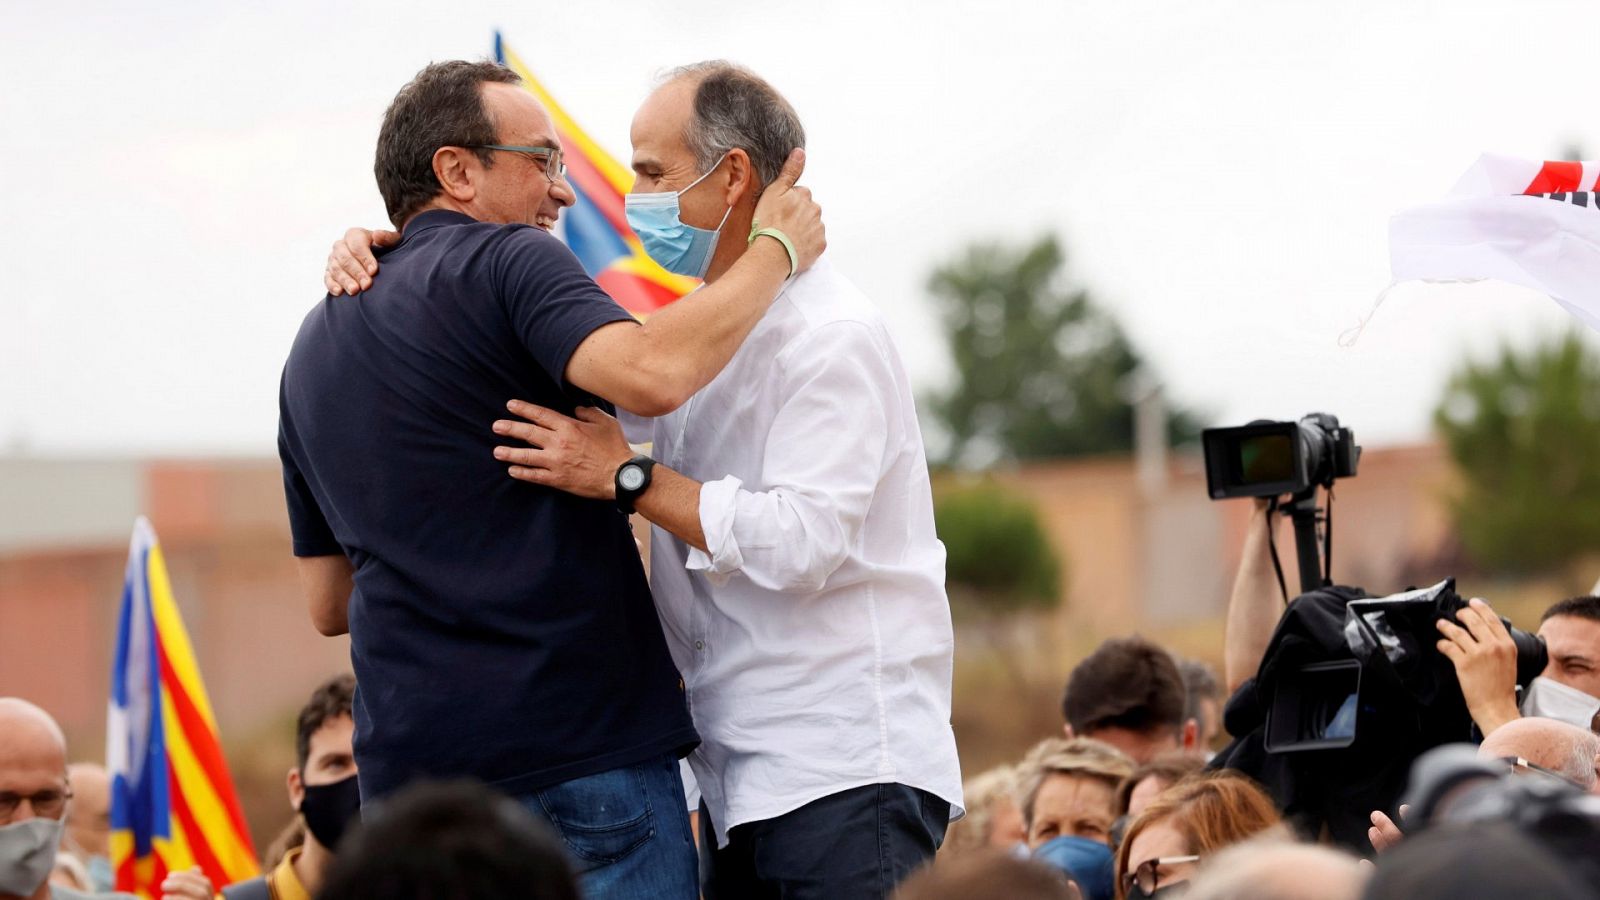 Los exconsellers indultados aseguran que seguirán "luchando para la independencia de Cataluña"